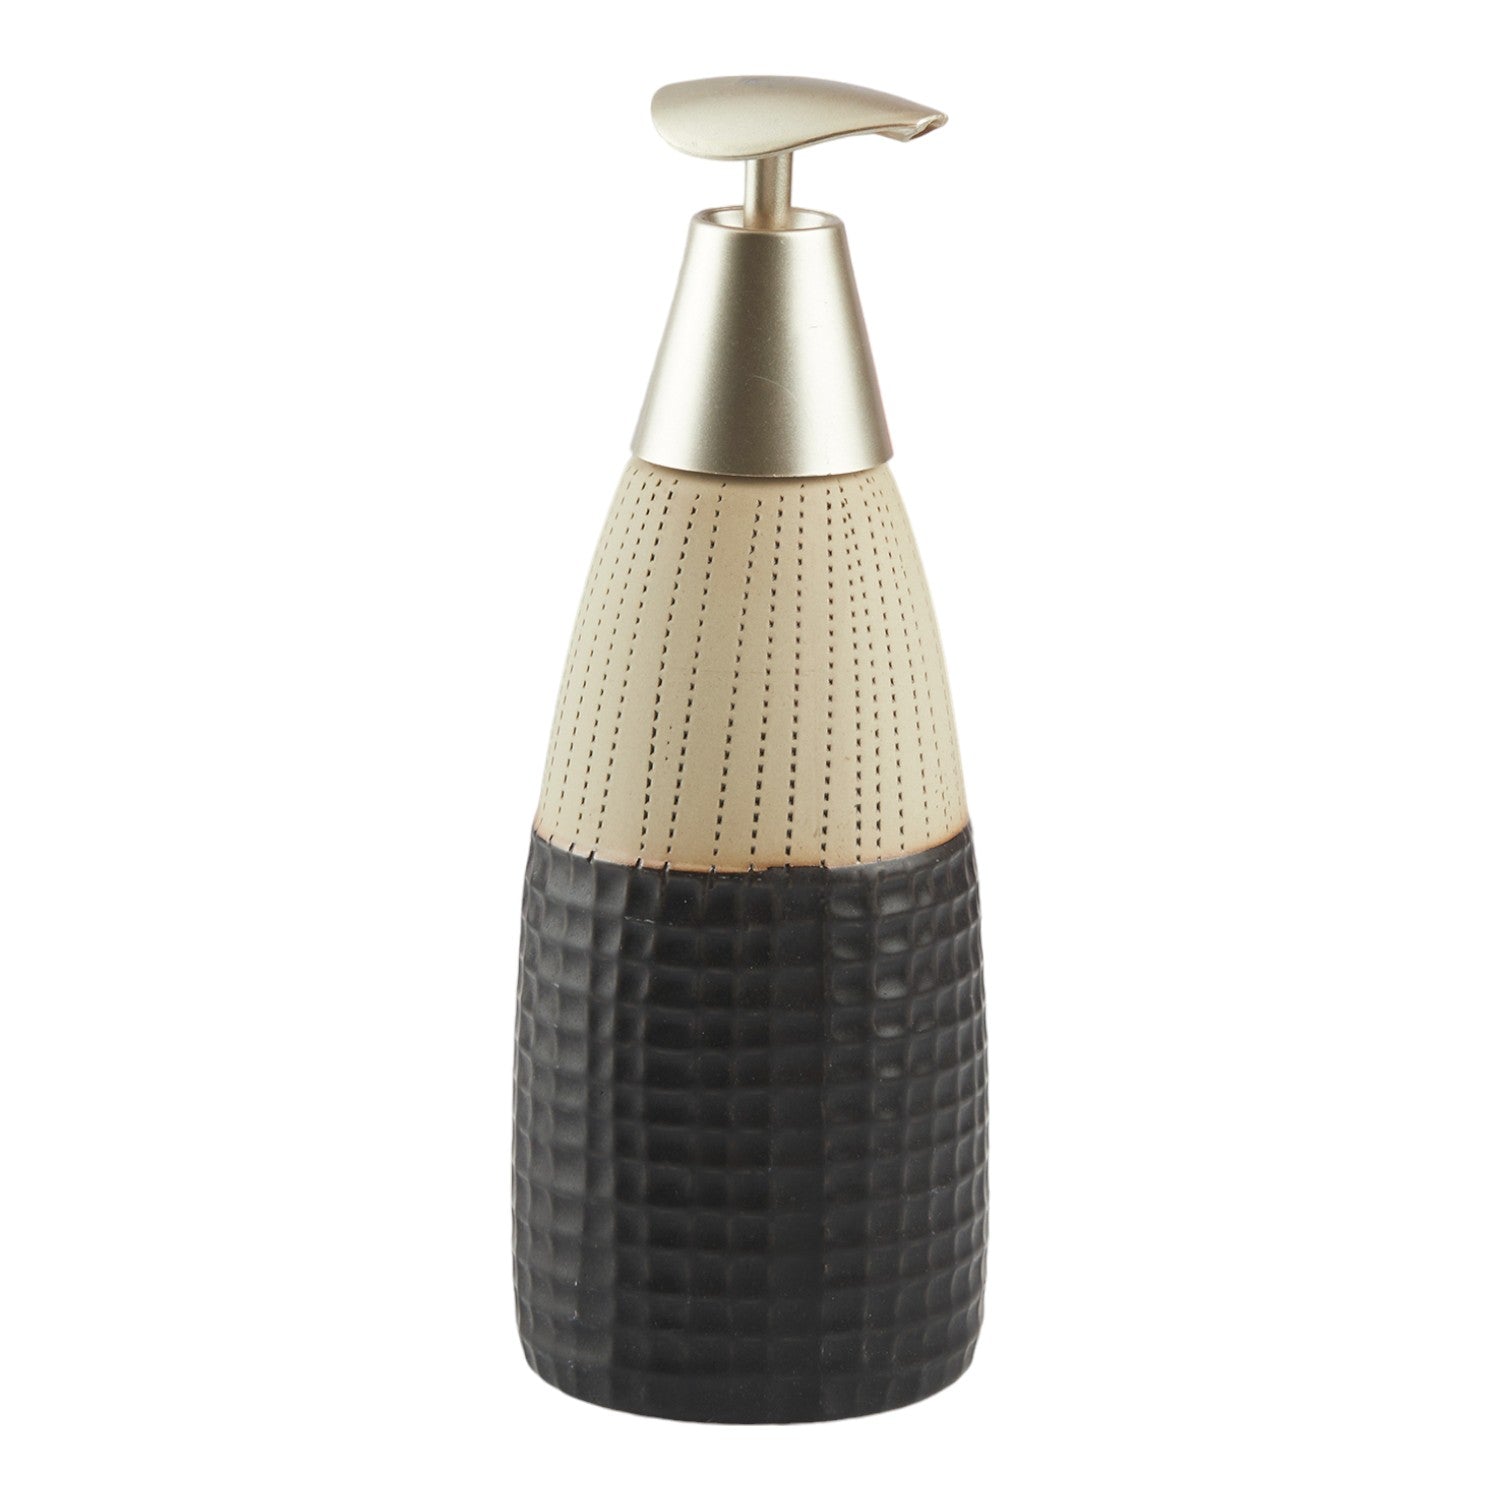 Ceramic Soap Dispenser liquid handwash pump for Bathroom, Set of 1, Black/Beige (10615)